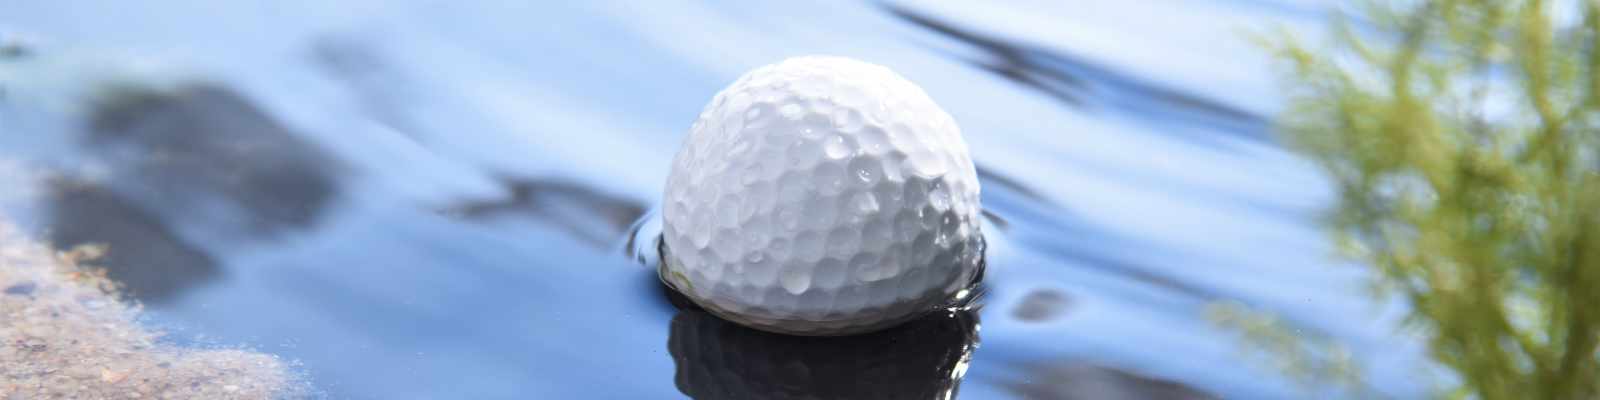 Golfball im Wasser (photo by taveesak srisomthavil / Shutterstock.com)